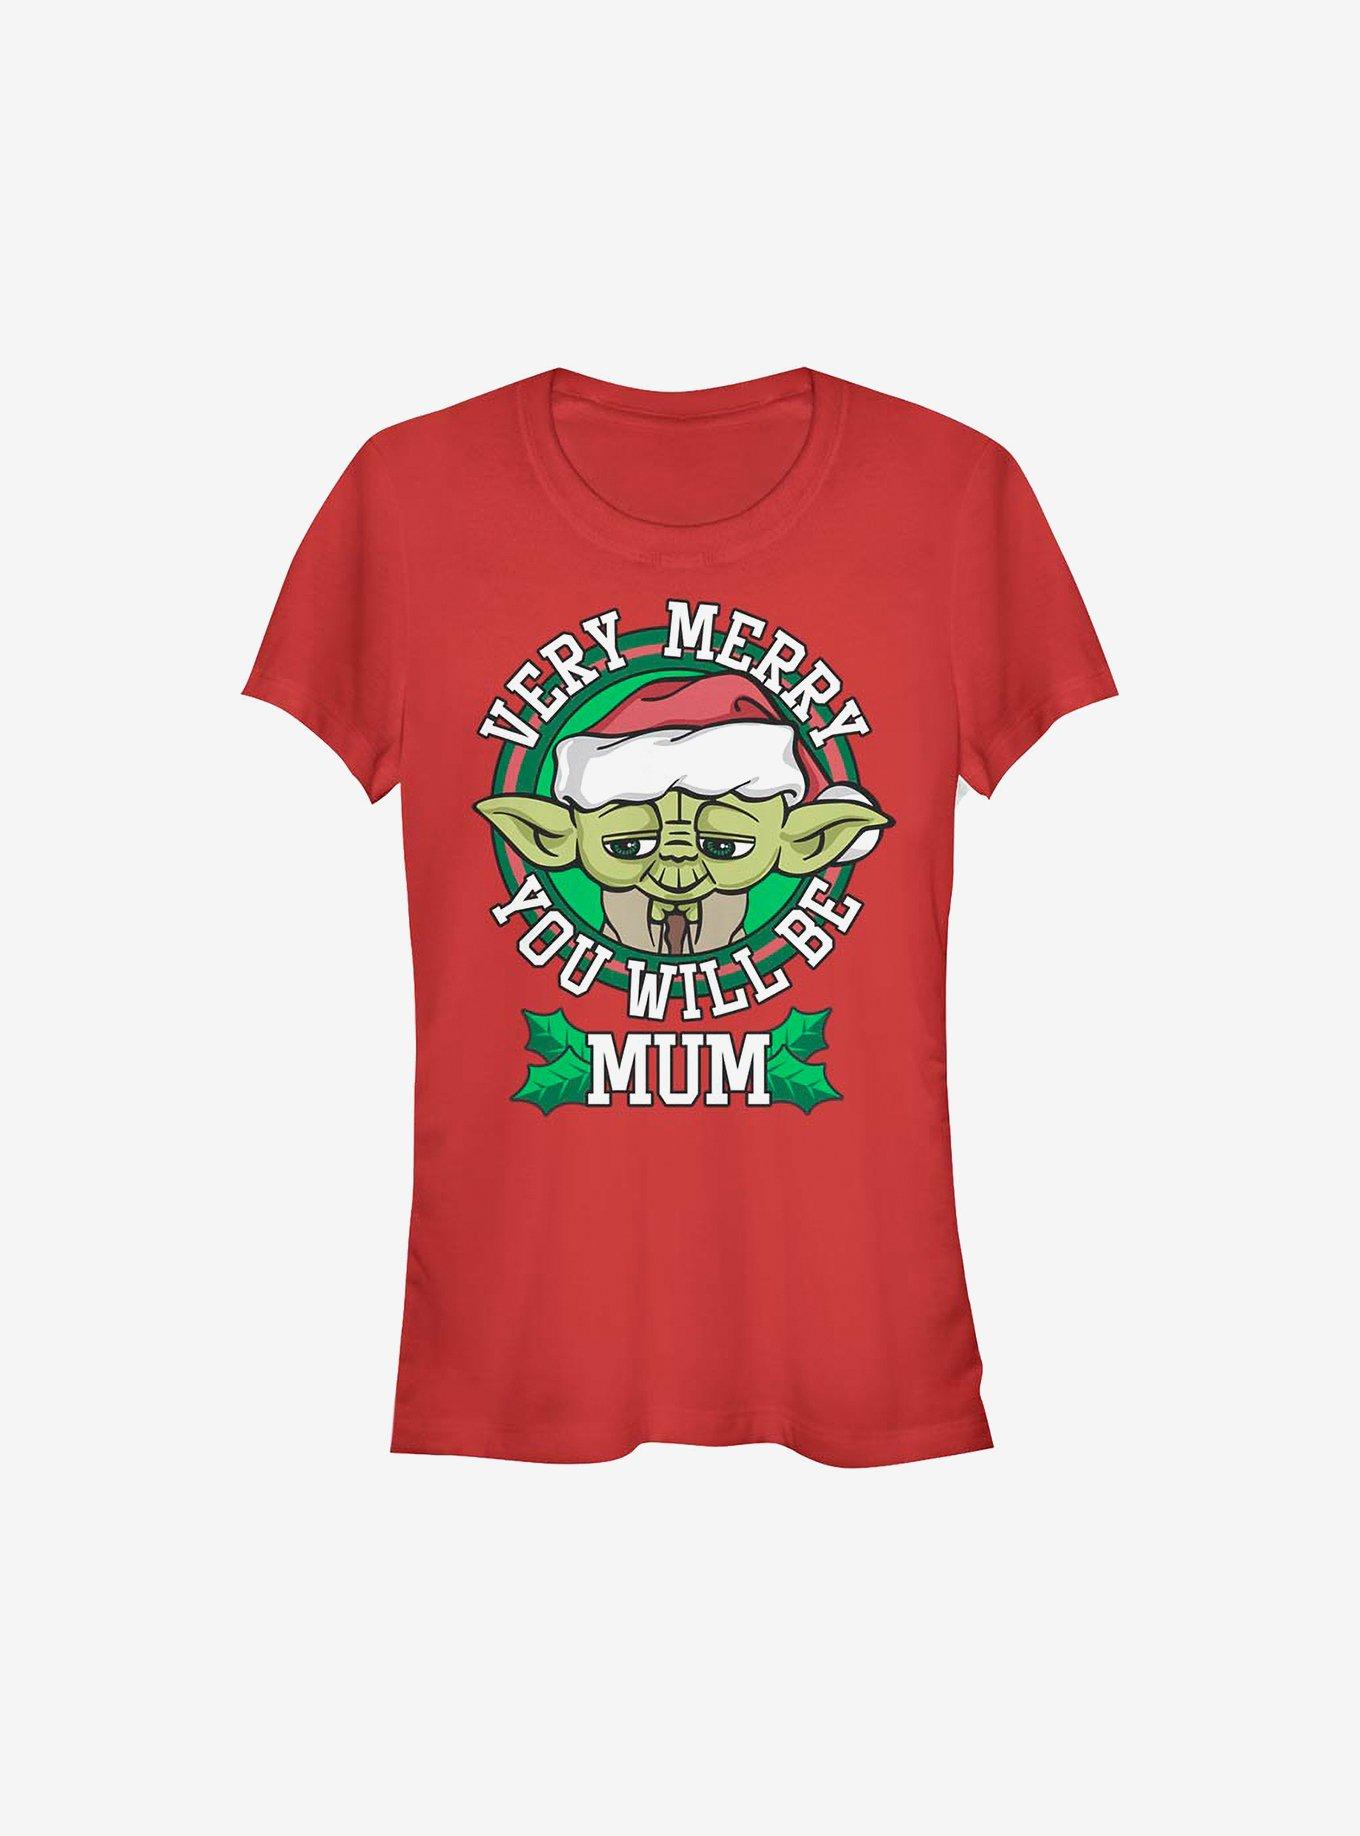 Star Wars Merry Yoda Mum Holiday Girls T-Shirt